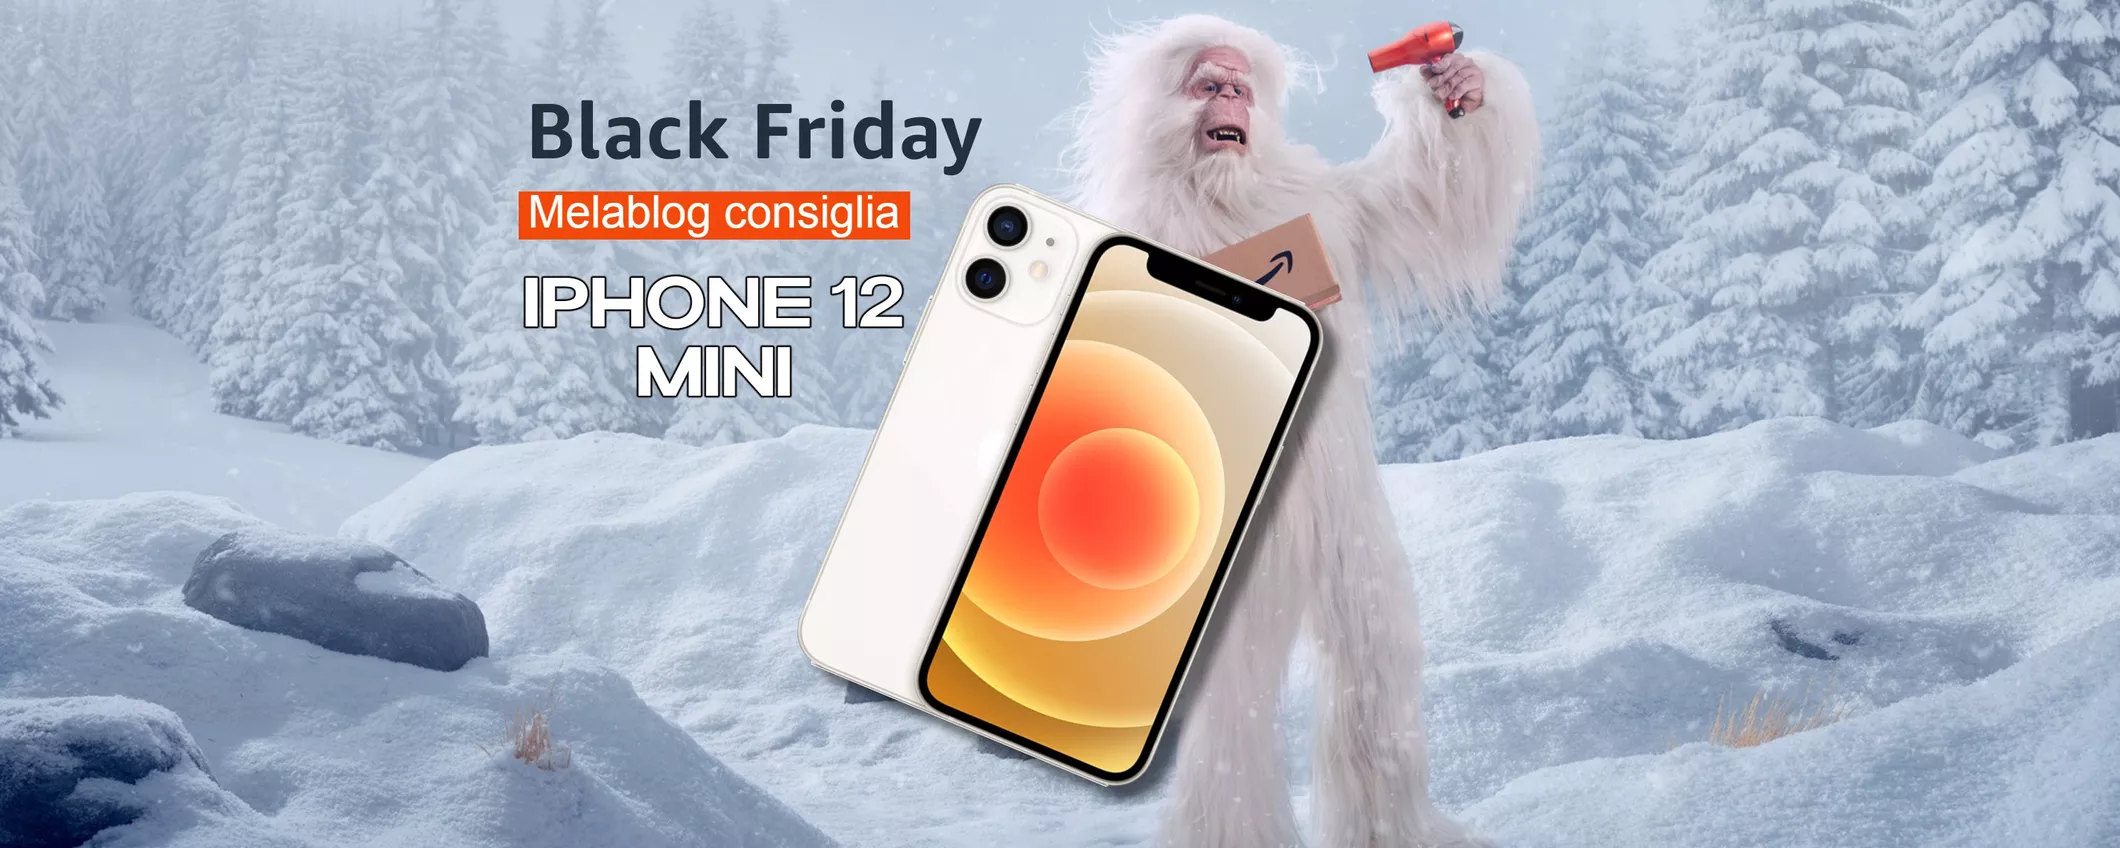 iPhone 12 Mini: PREZZO FAVOLOSO per il Black Friday